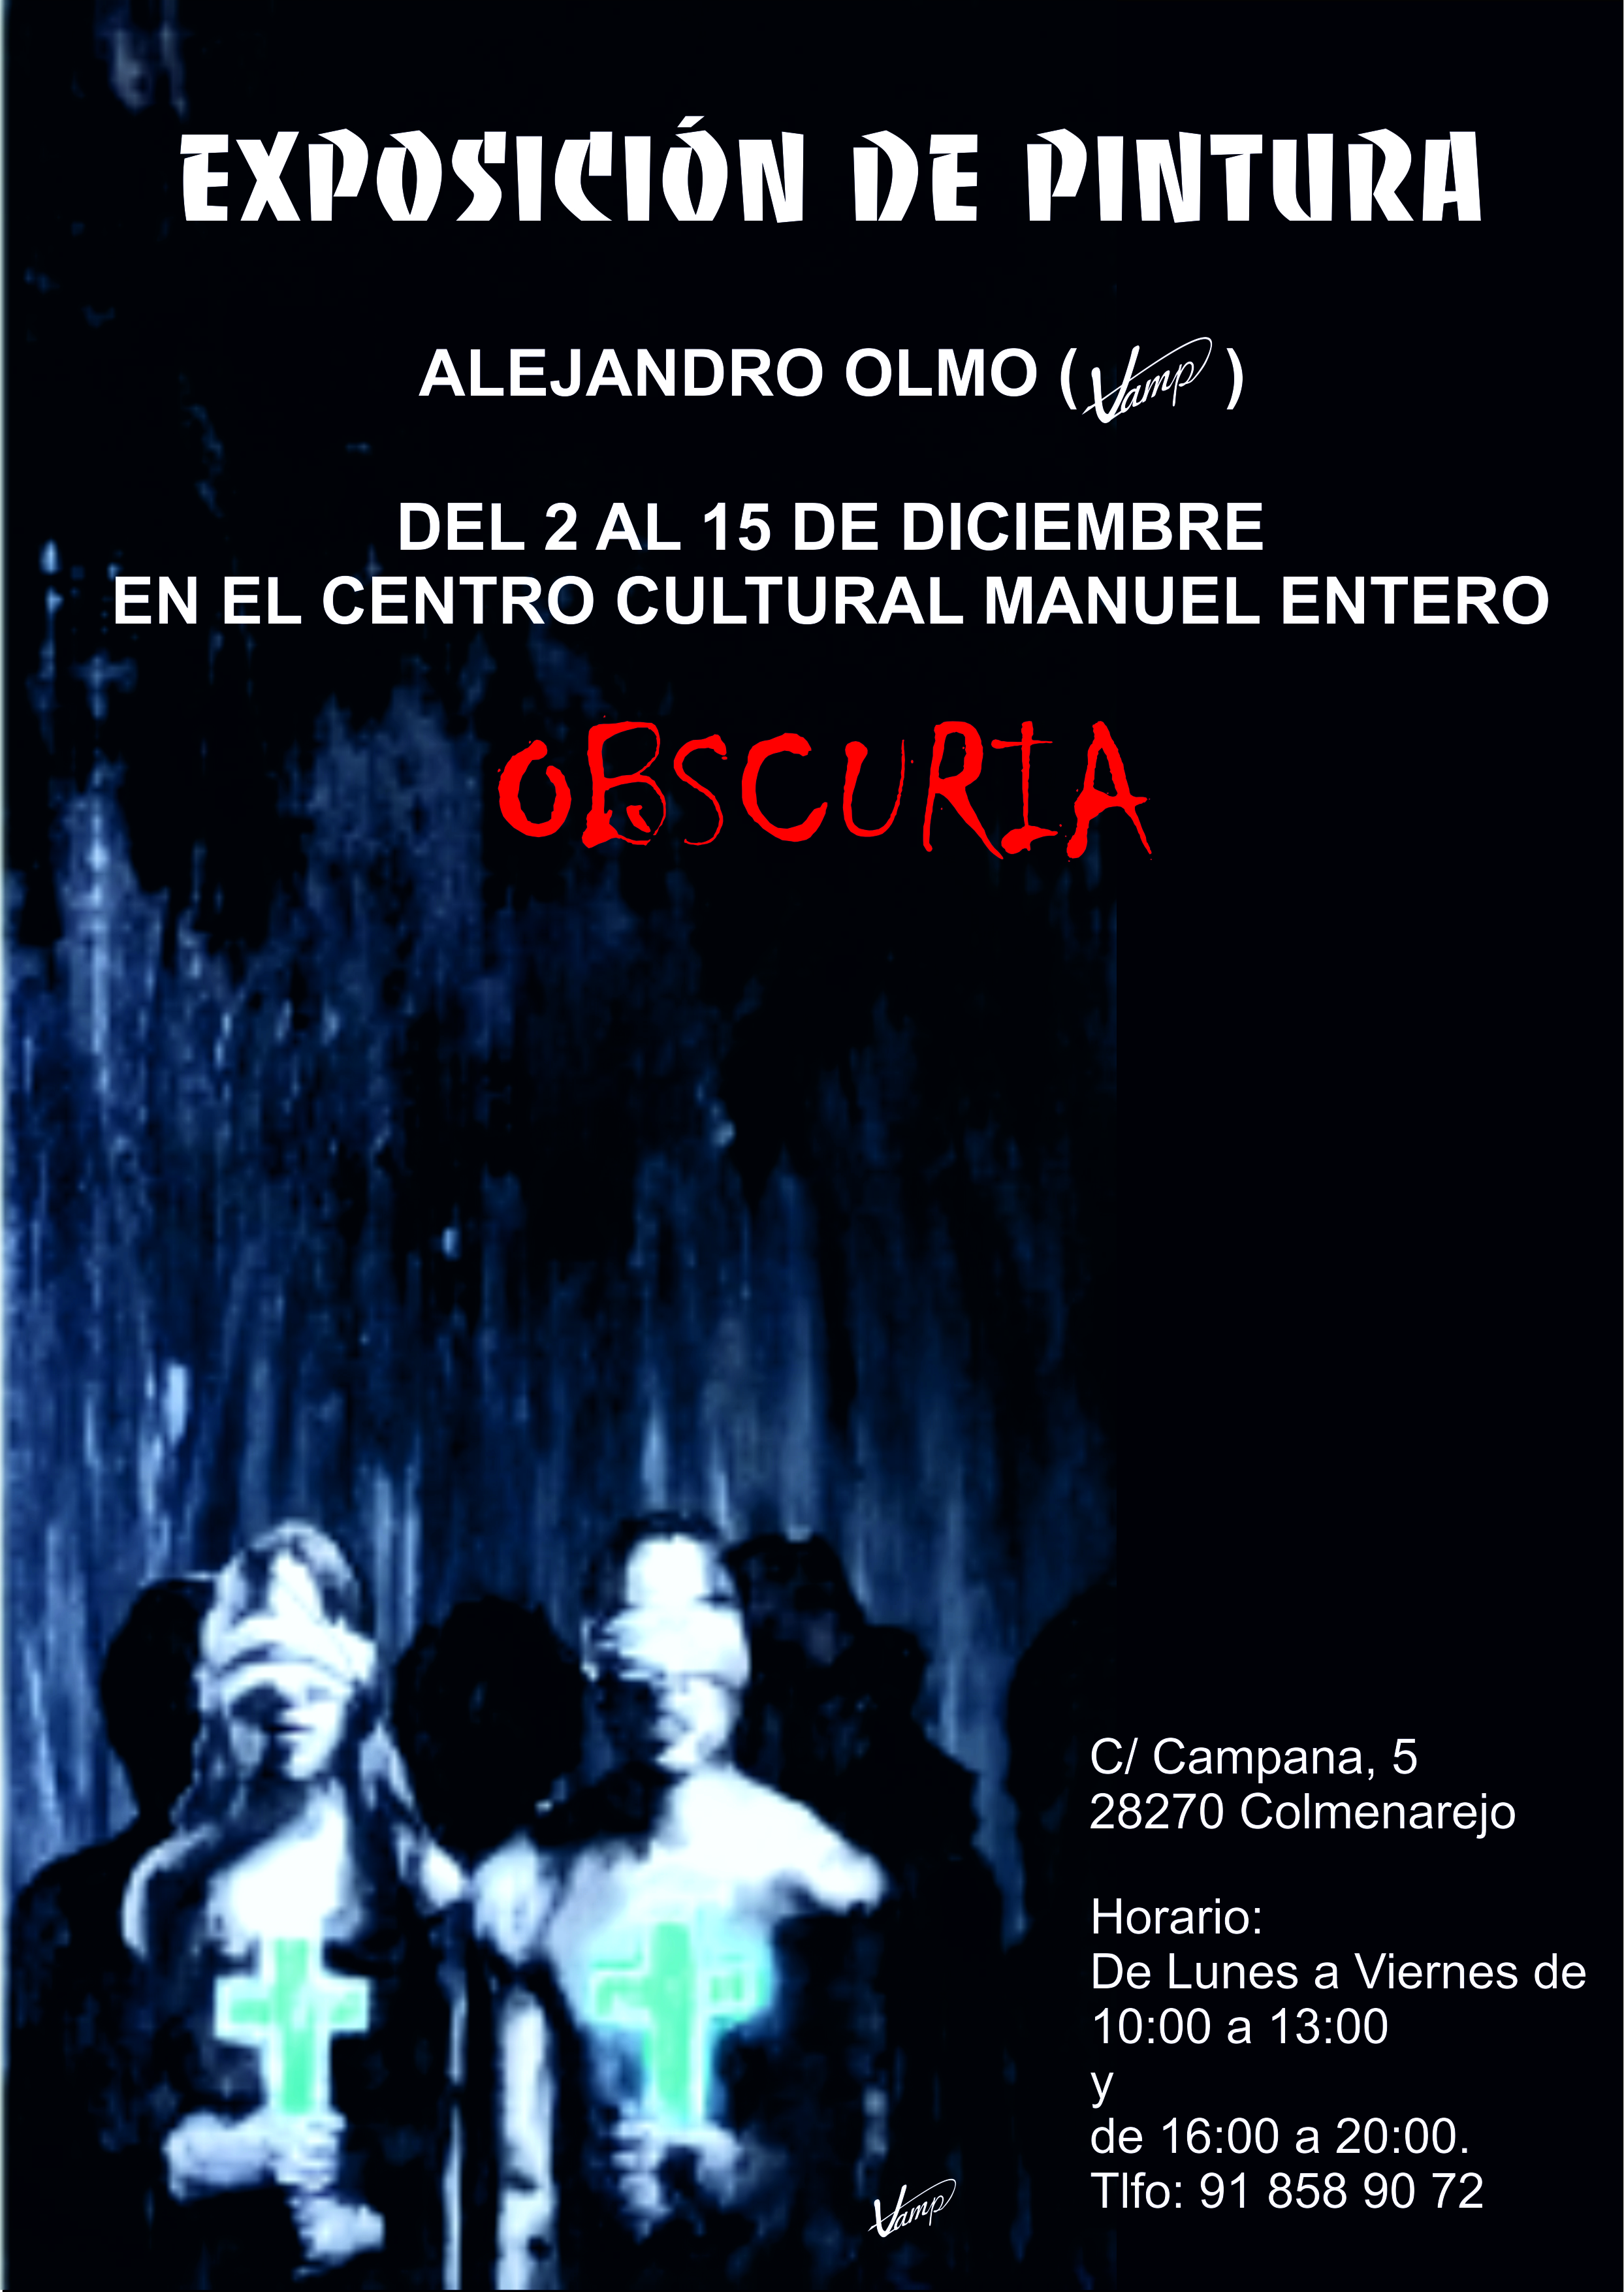 Exposición ALEJANDRO OLMO (VAMP) @ Centro Cultural